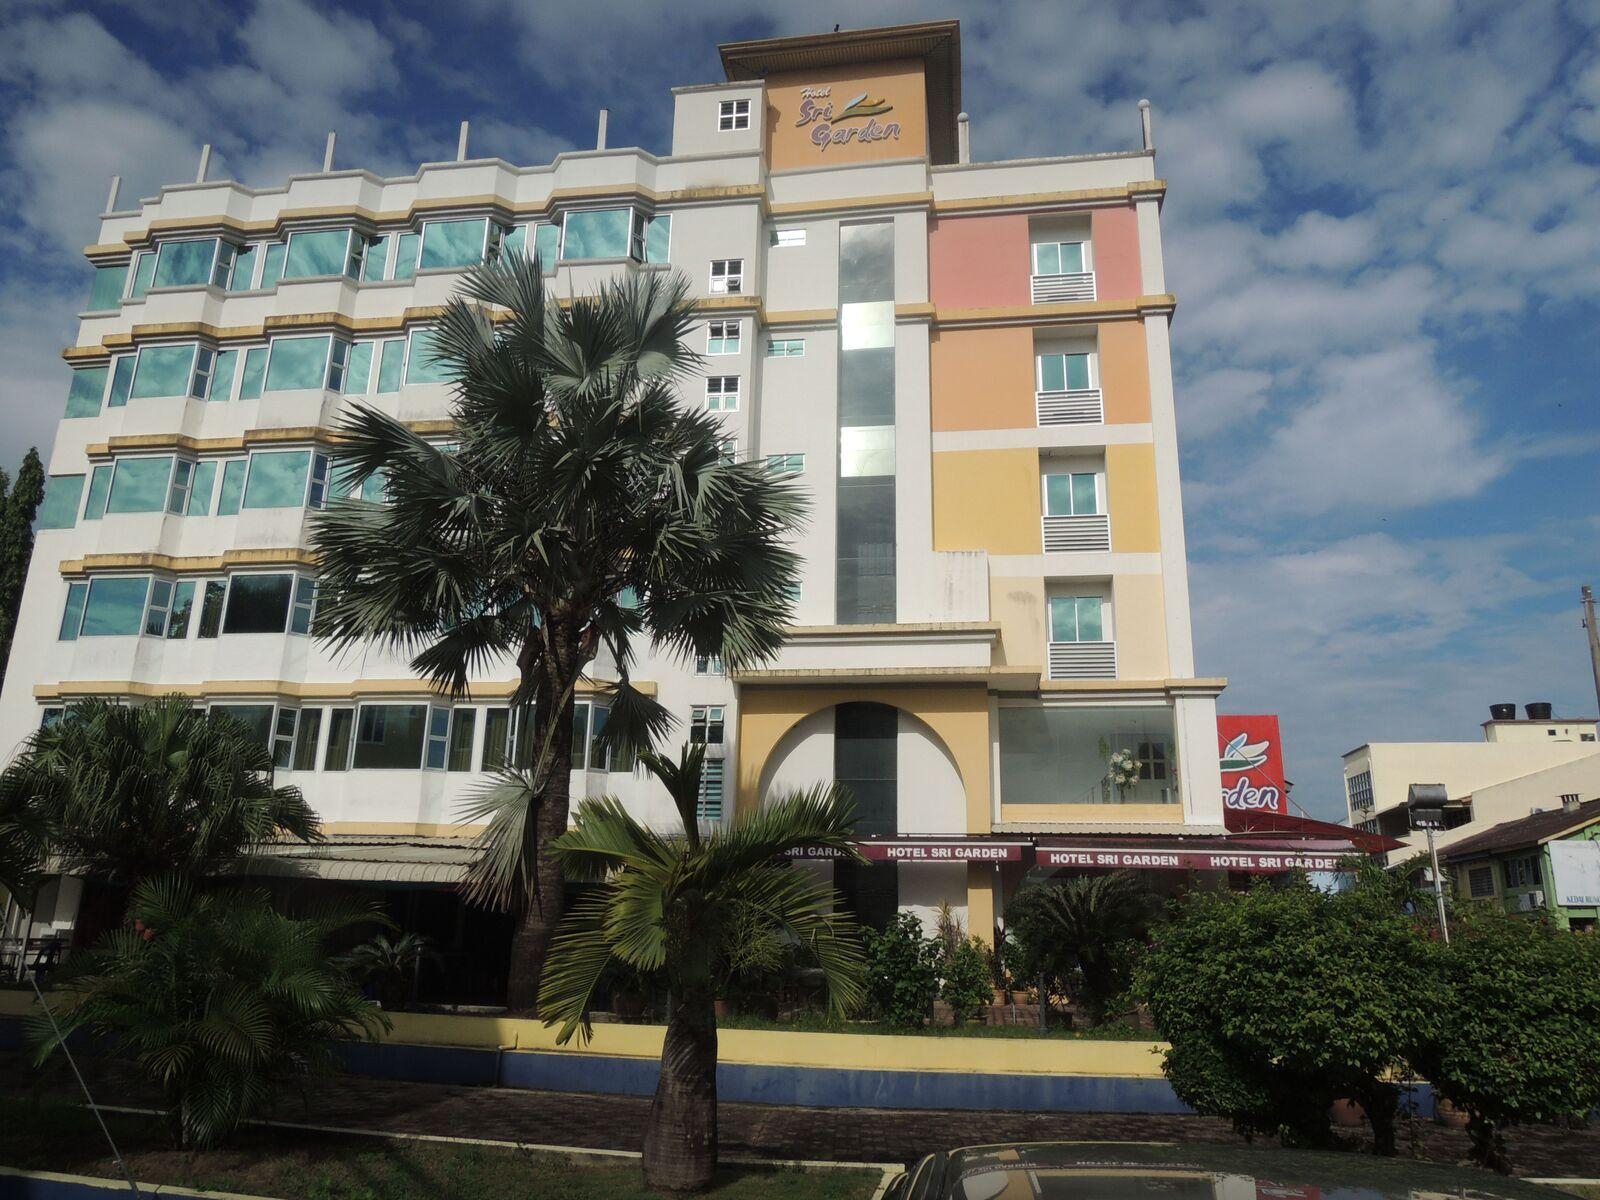 Exterior & Views 1, Hotel Sri Garden, Perlis